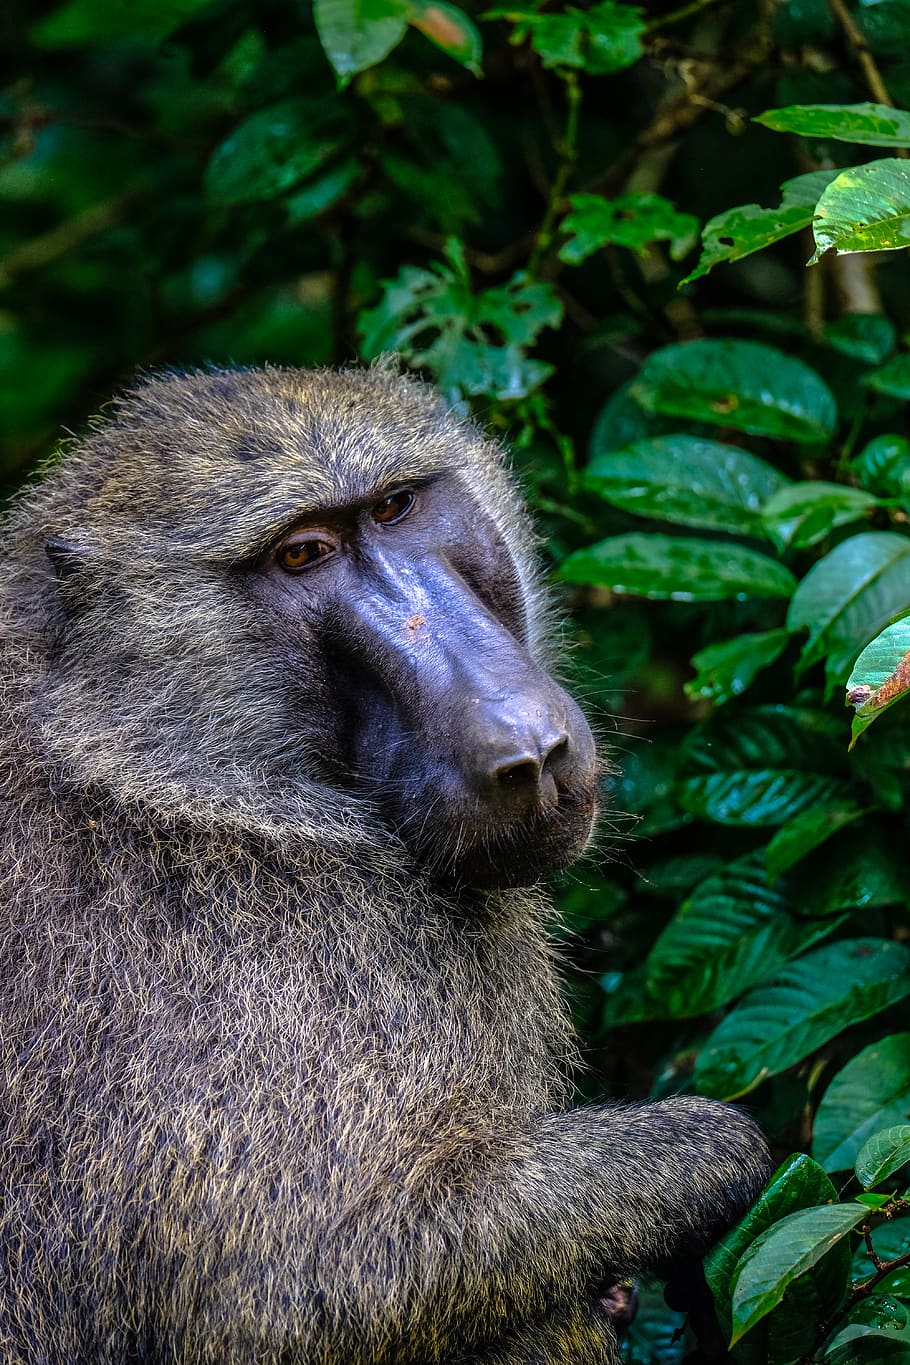 brown monkey near tree during daytime, animal, wildlife, mammal, HD wallpaper